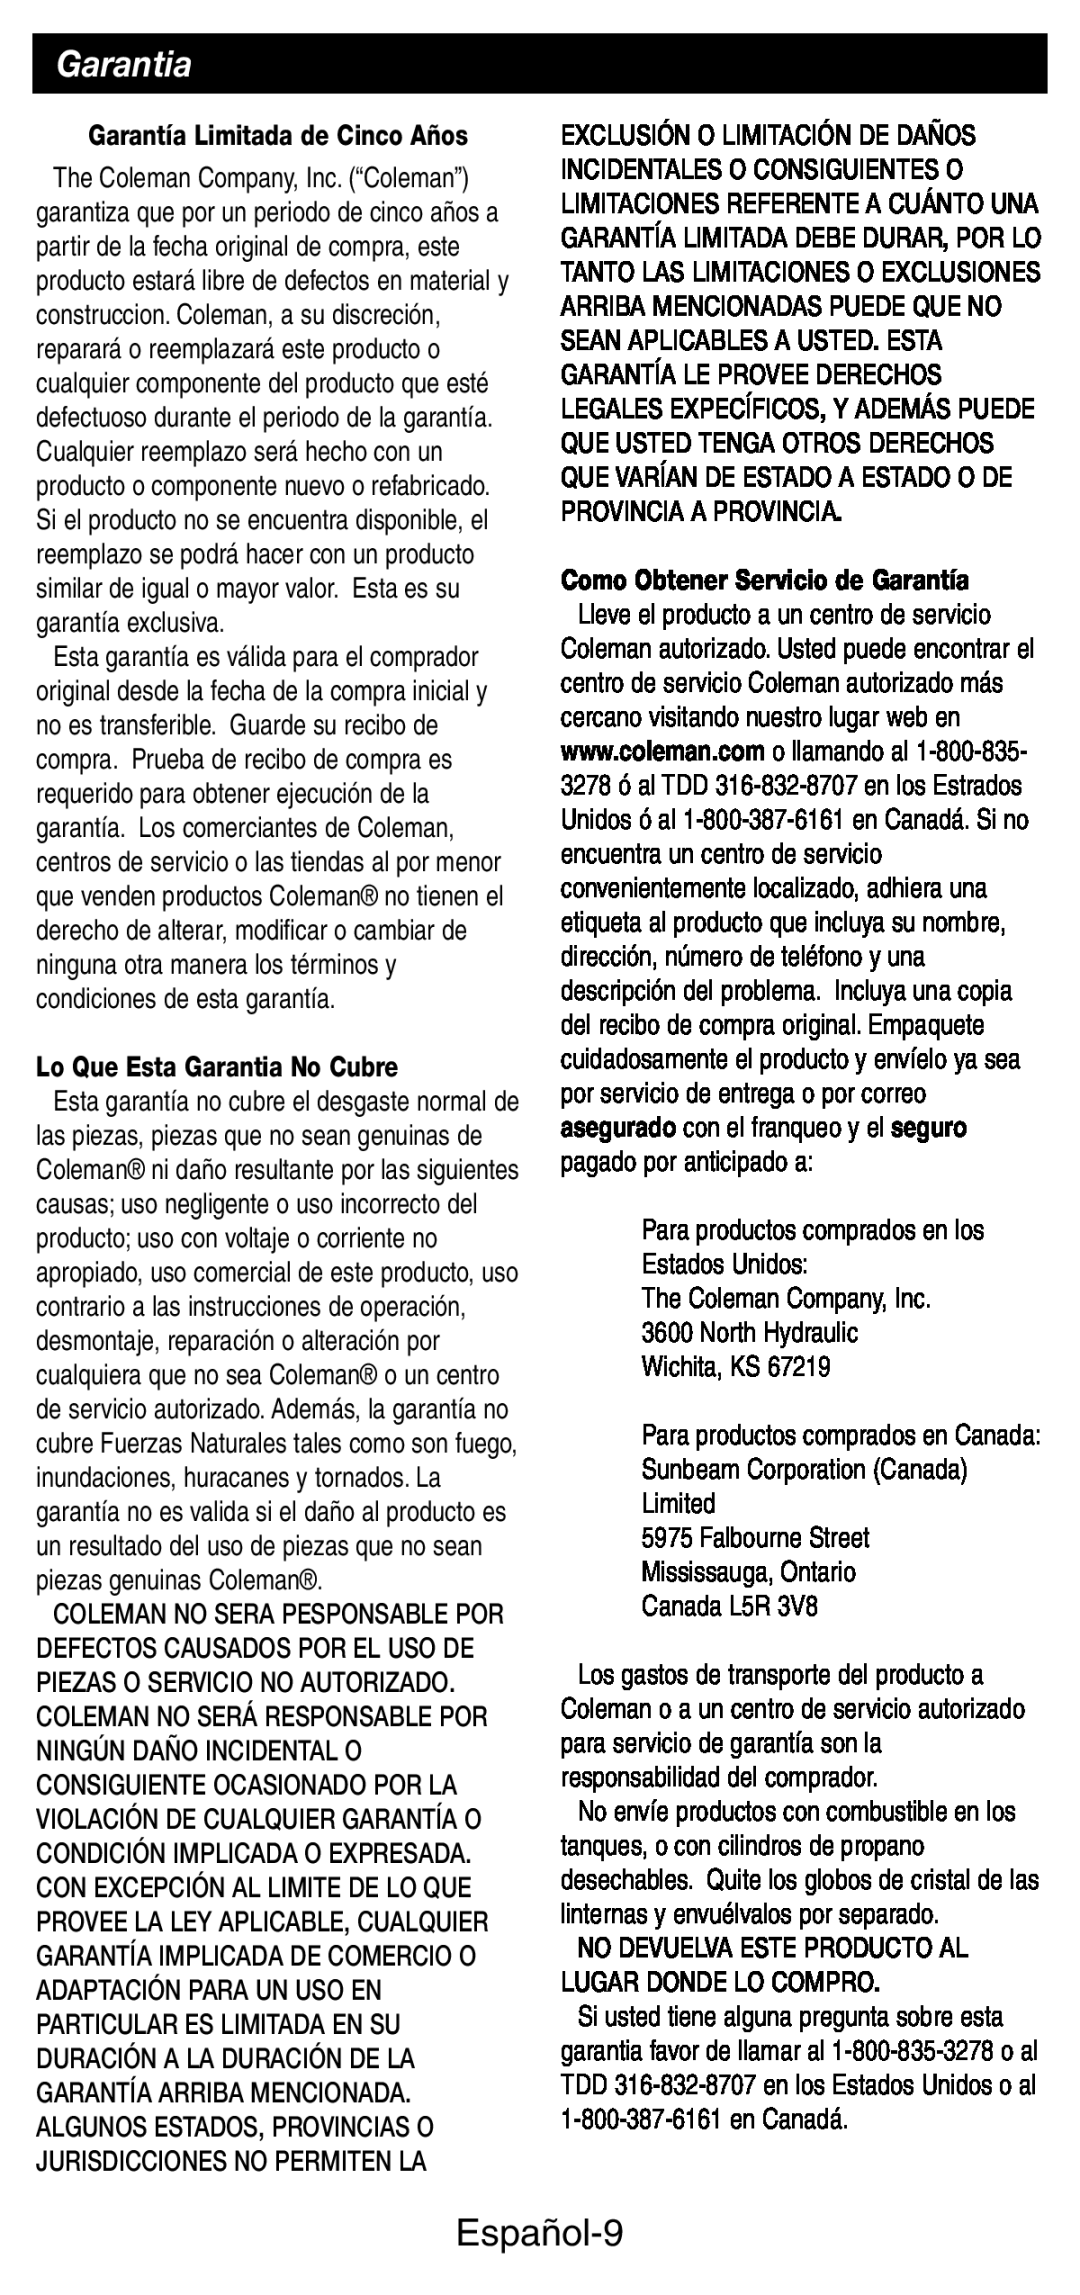 Coleman 9927 manual Español-9, Garantía Limitada de Cinco Años, Lo Que Esta Garantia No Cubre, The Coleman Company, Inc 